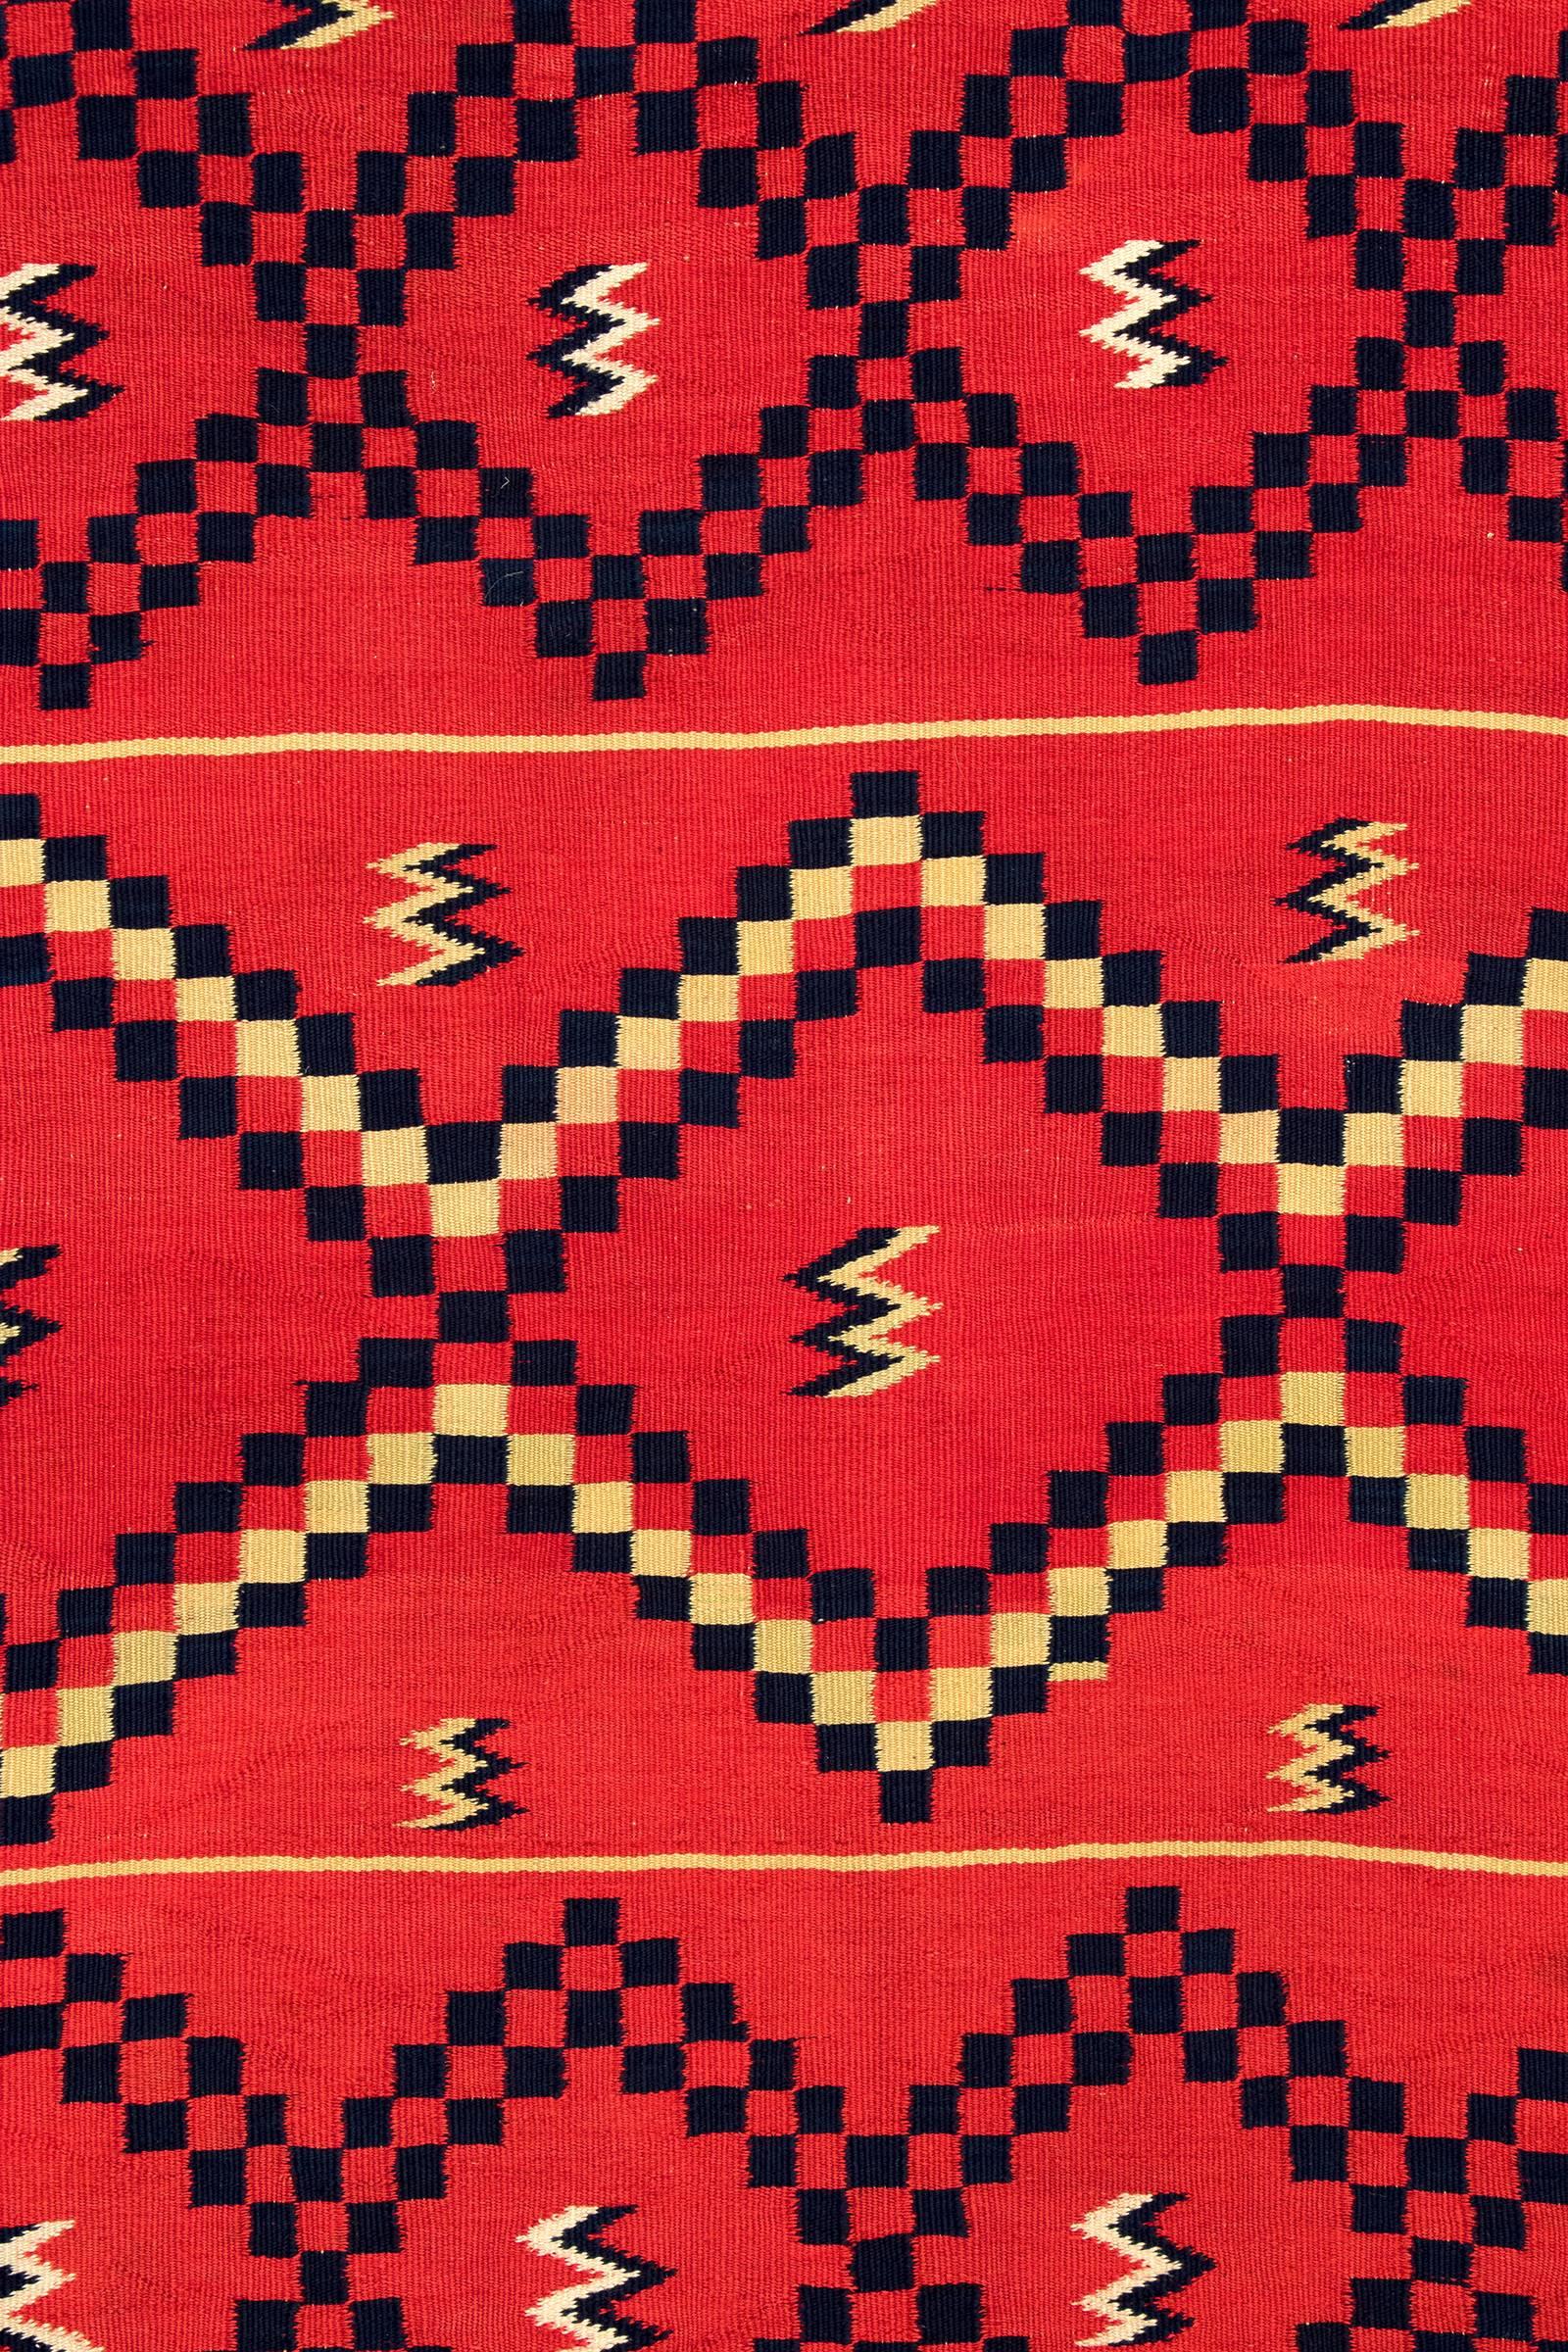 Hand-Woven Antique Classic Period Native American Serape, Navajo, 19th Century